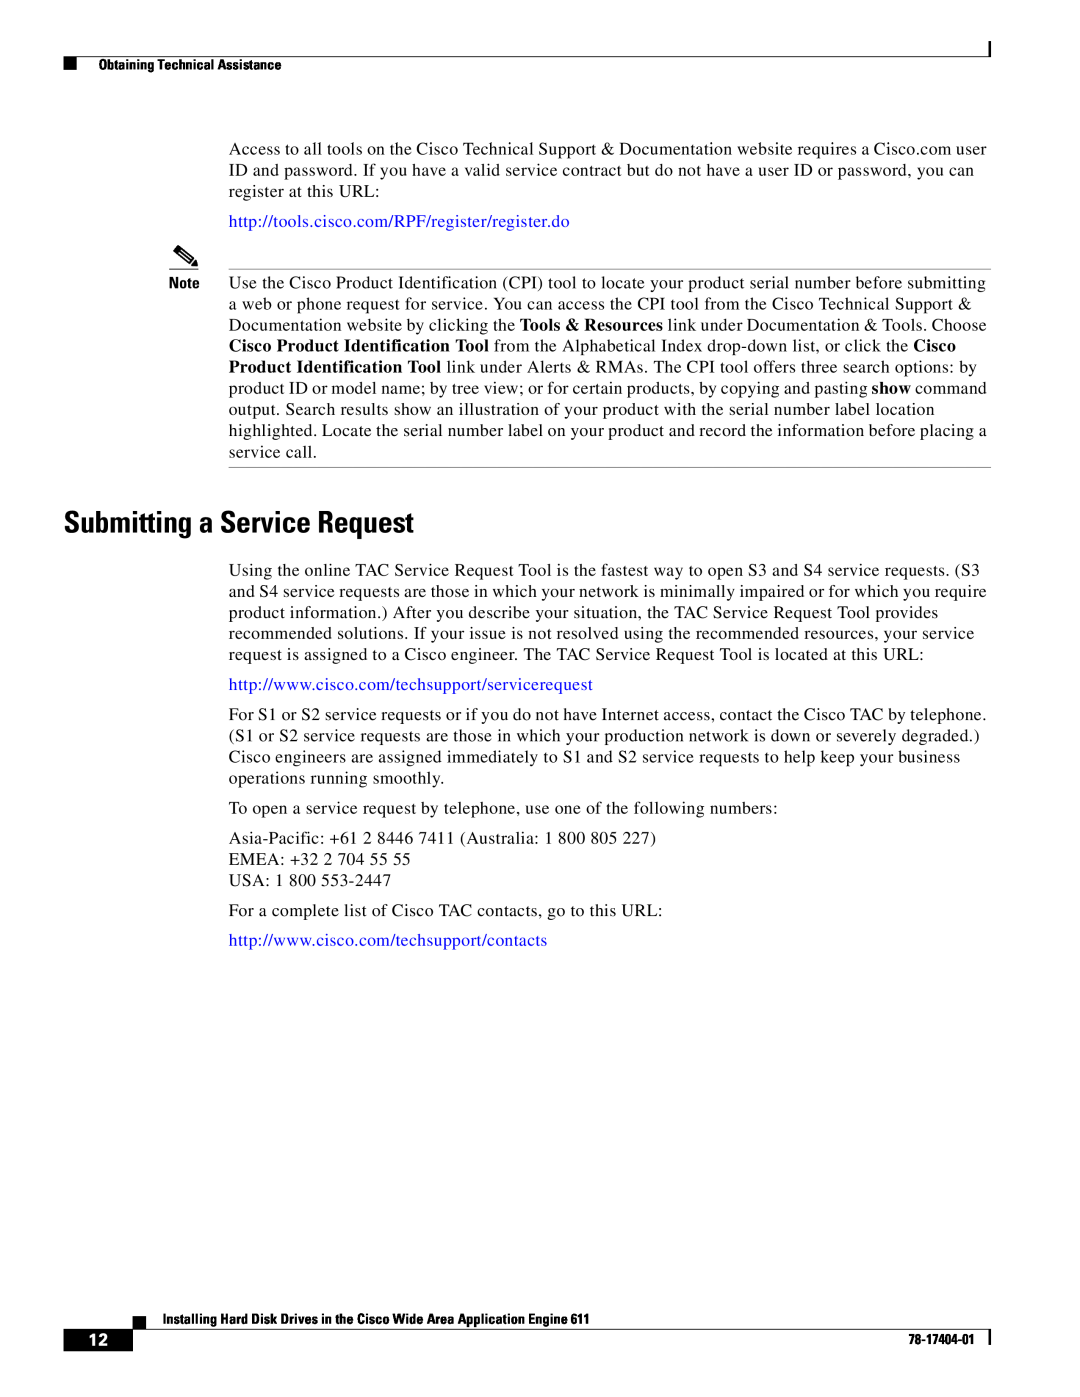 Cisco Systems Engine 611 manual Submitting a Service Request, http//tools.cisco.com/RPF/register/register.do 